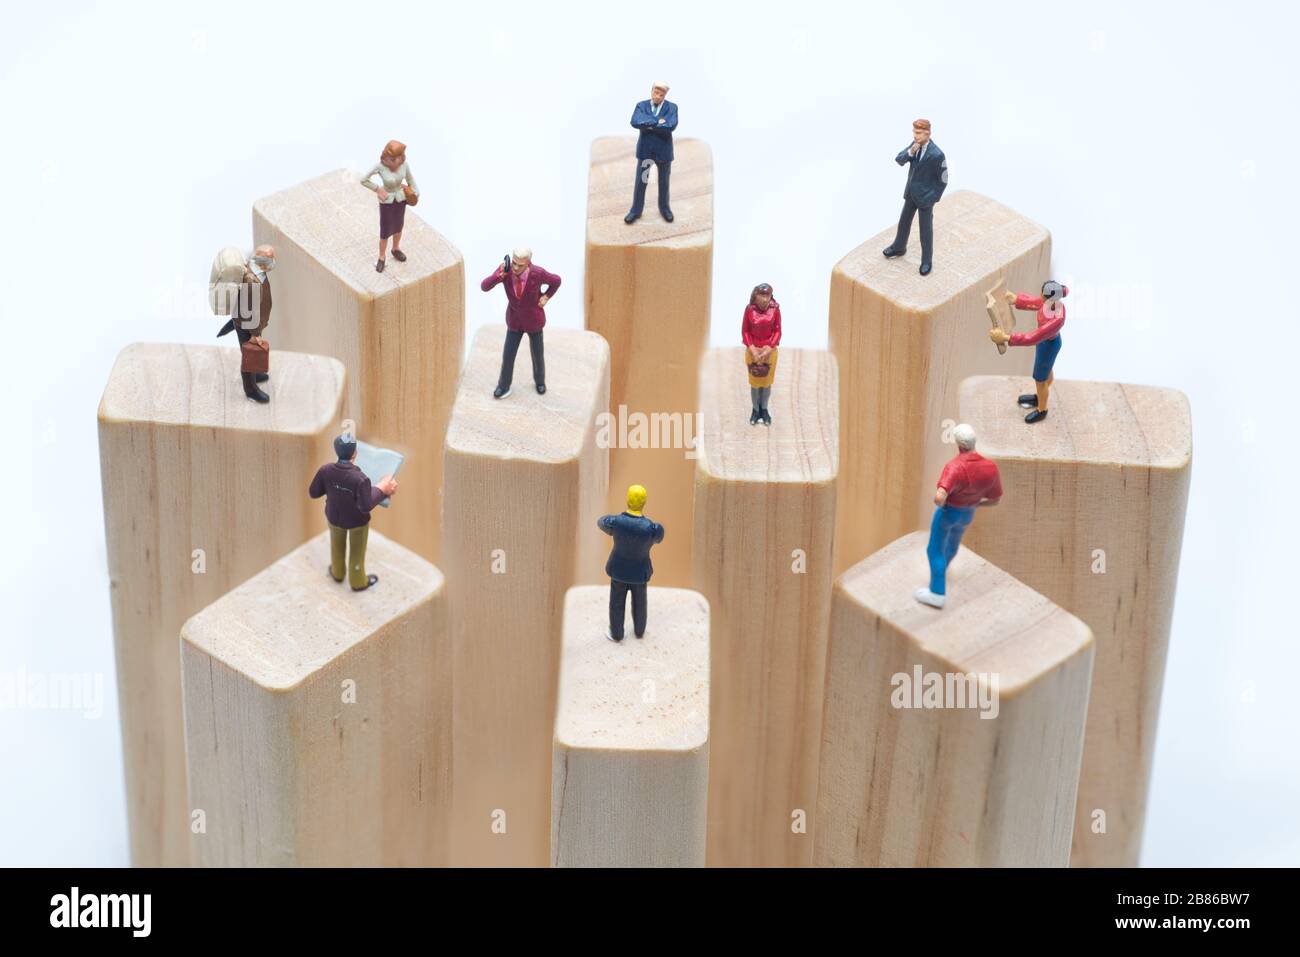 Miniaturspielzeuge, die auf Holzklotz stehen - soziale Distanzierung, anti-soziales Konzept oder Teamarbeit. Stockfoto